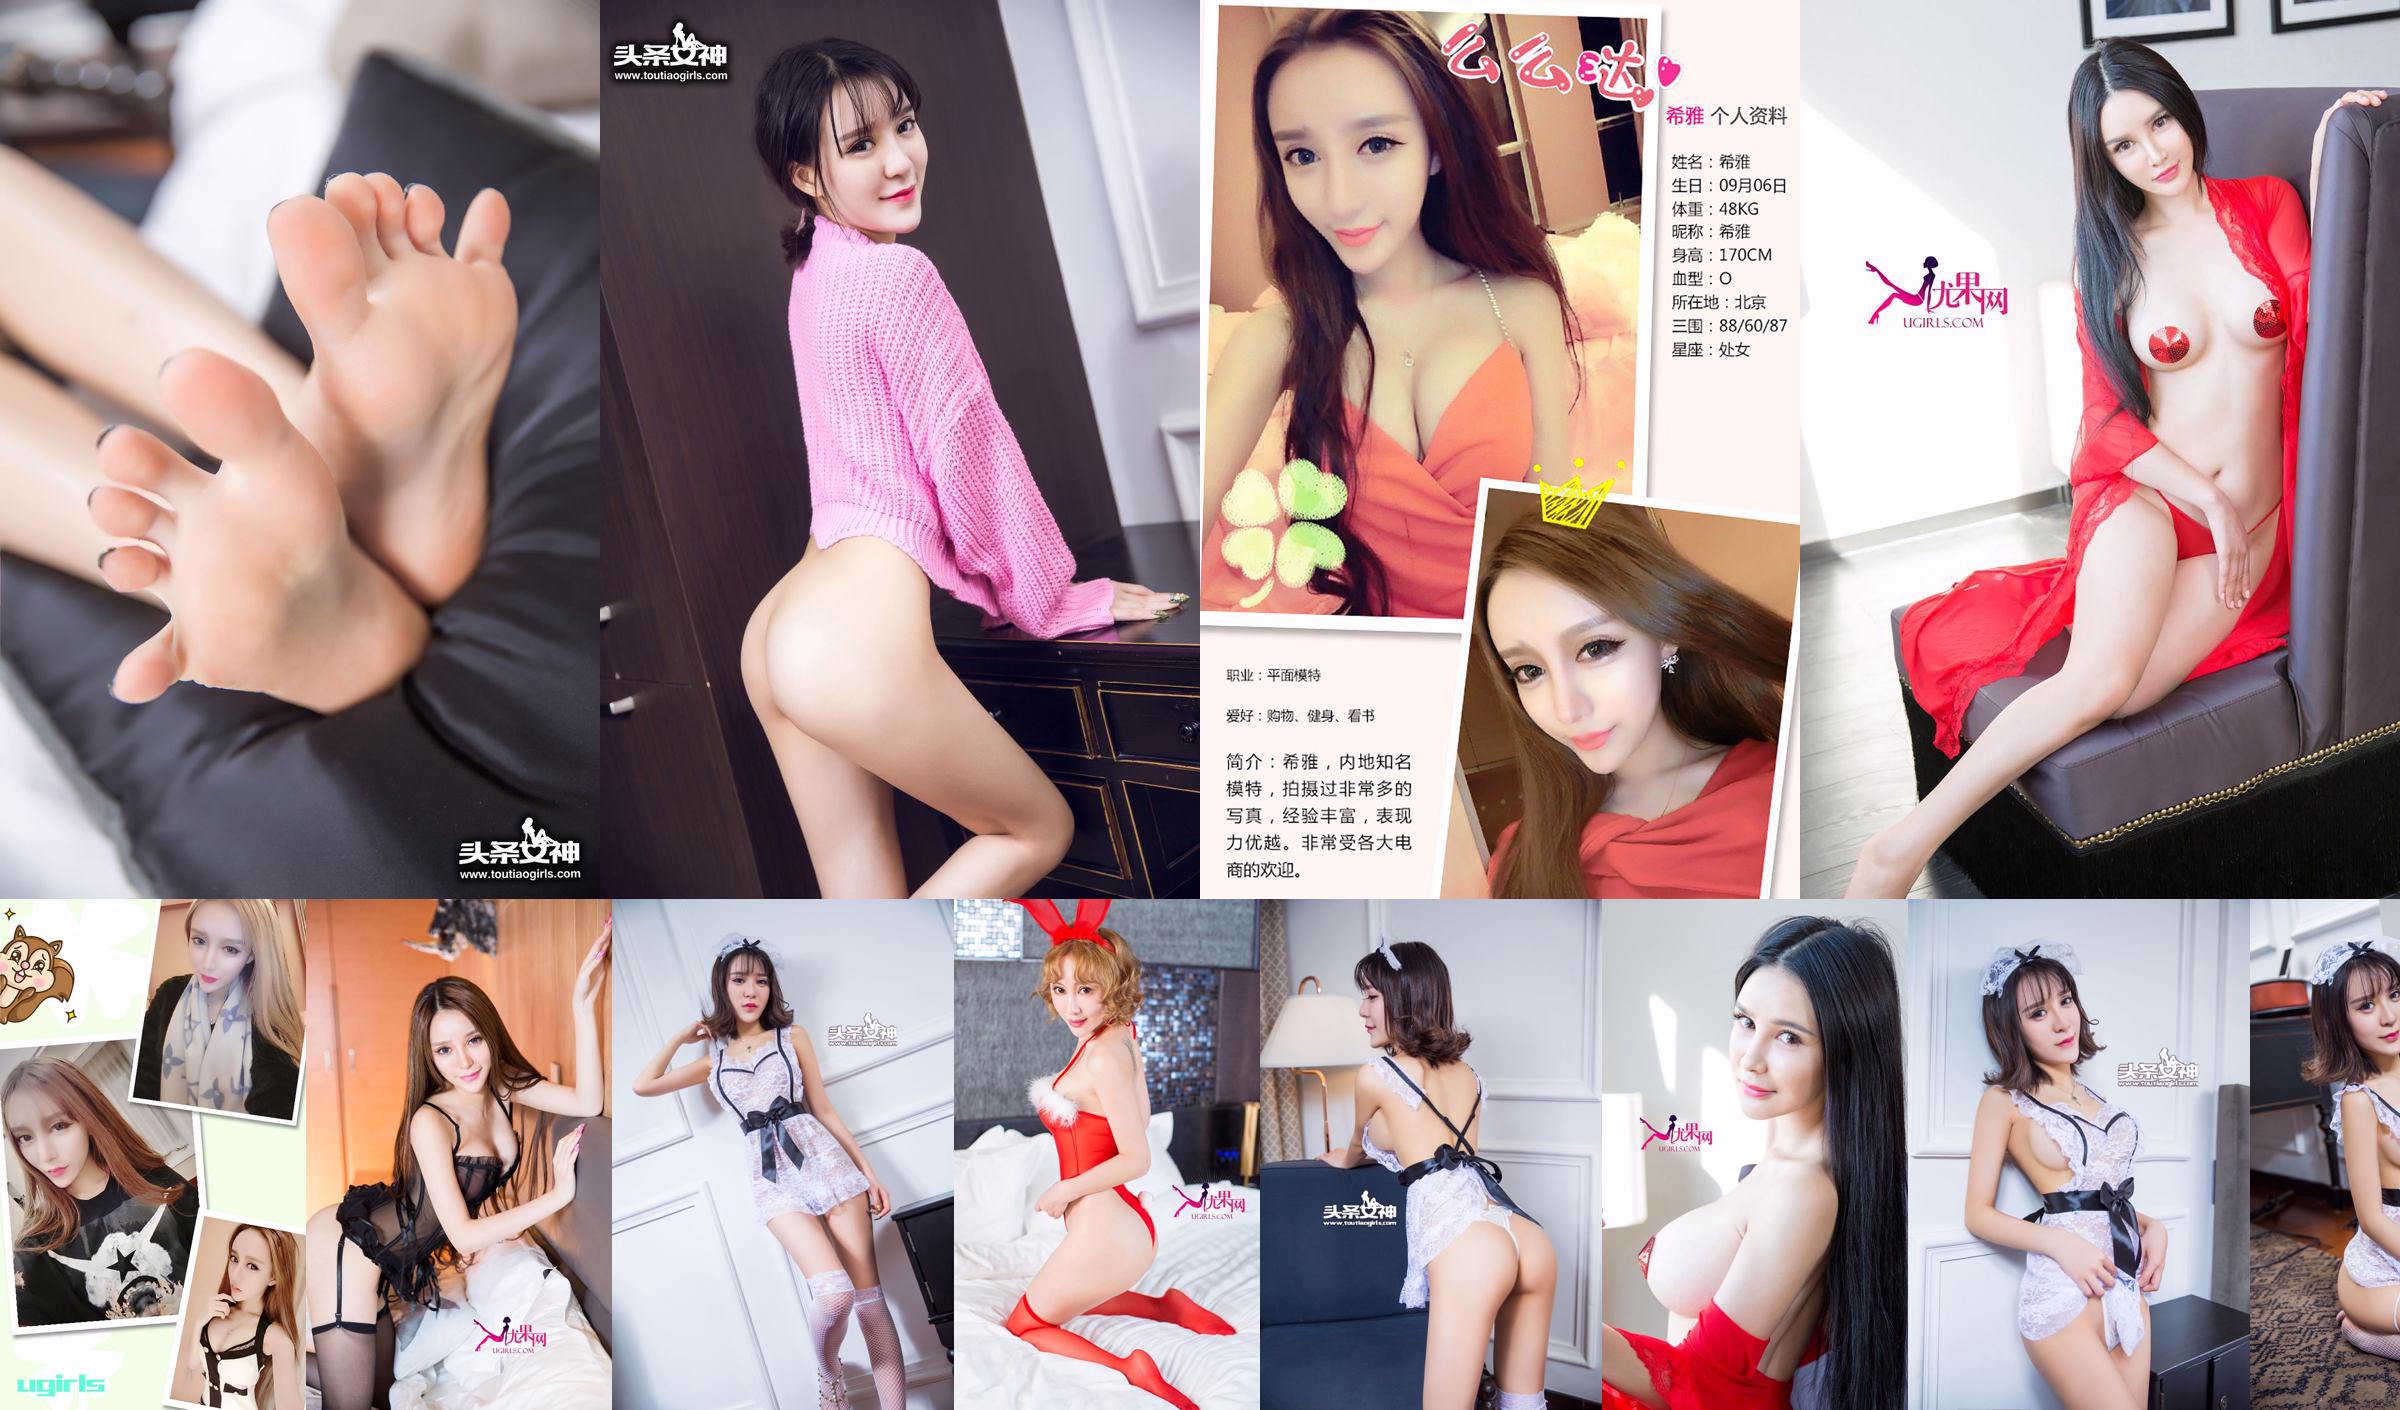 Xia "36D Lace Maid" [Bogini nagłówka] Wyłącznie dla VIP-ów No.68b913 Strona 2